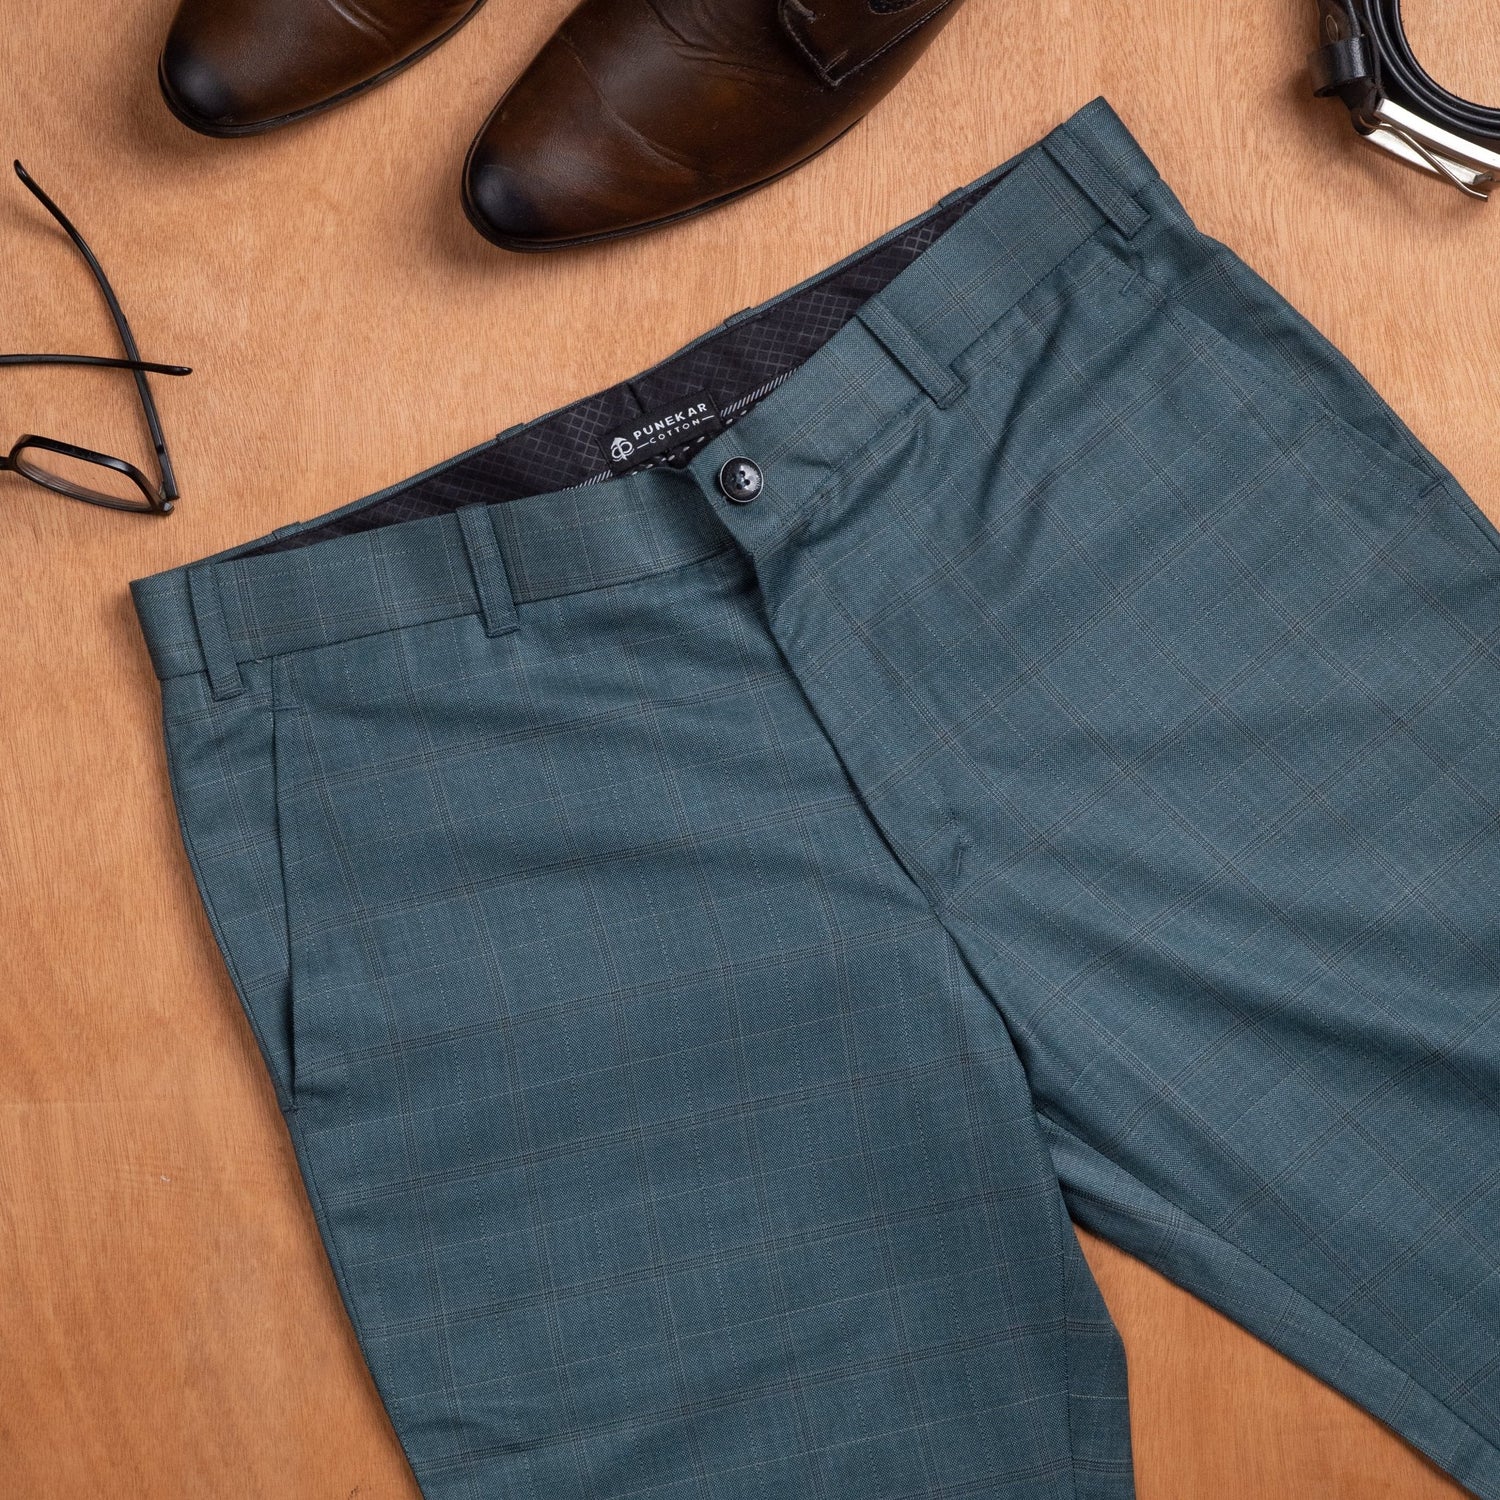 Forest Green color check blend cotton trousers pant for men - Punekar Cotton